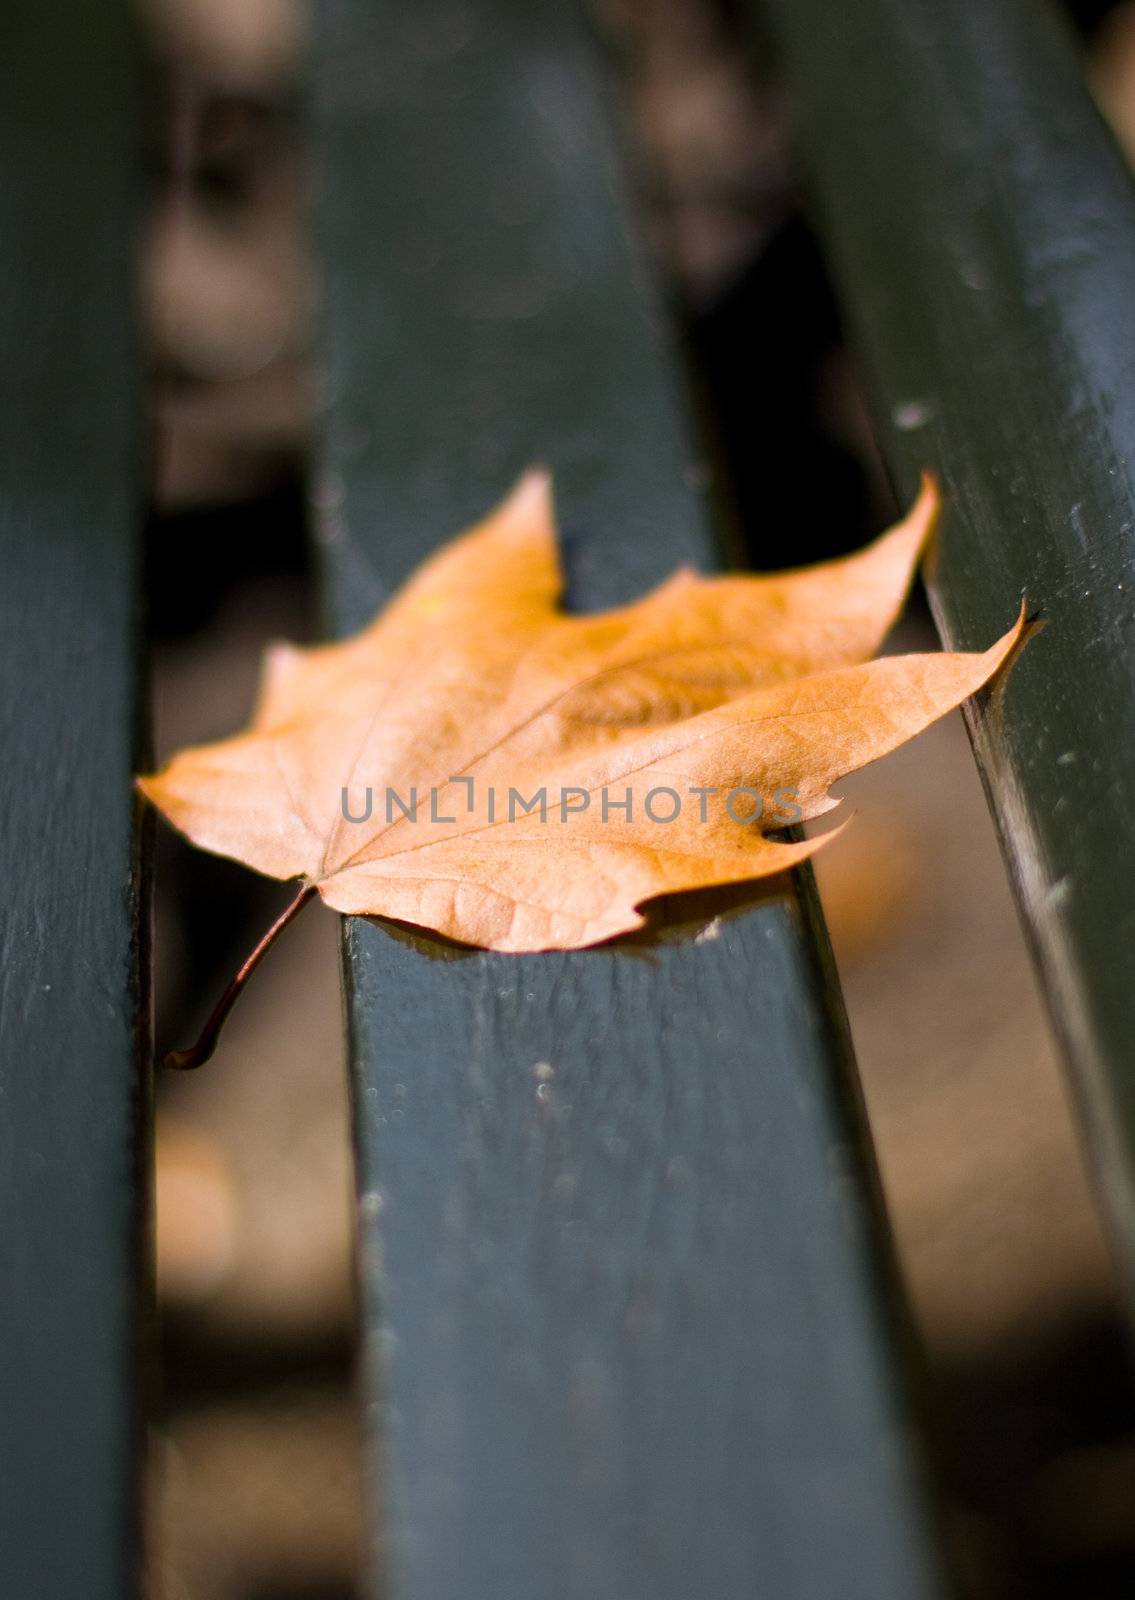 Fallen leaf has landed on a black bench